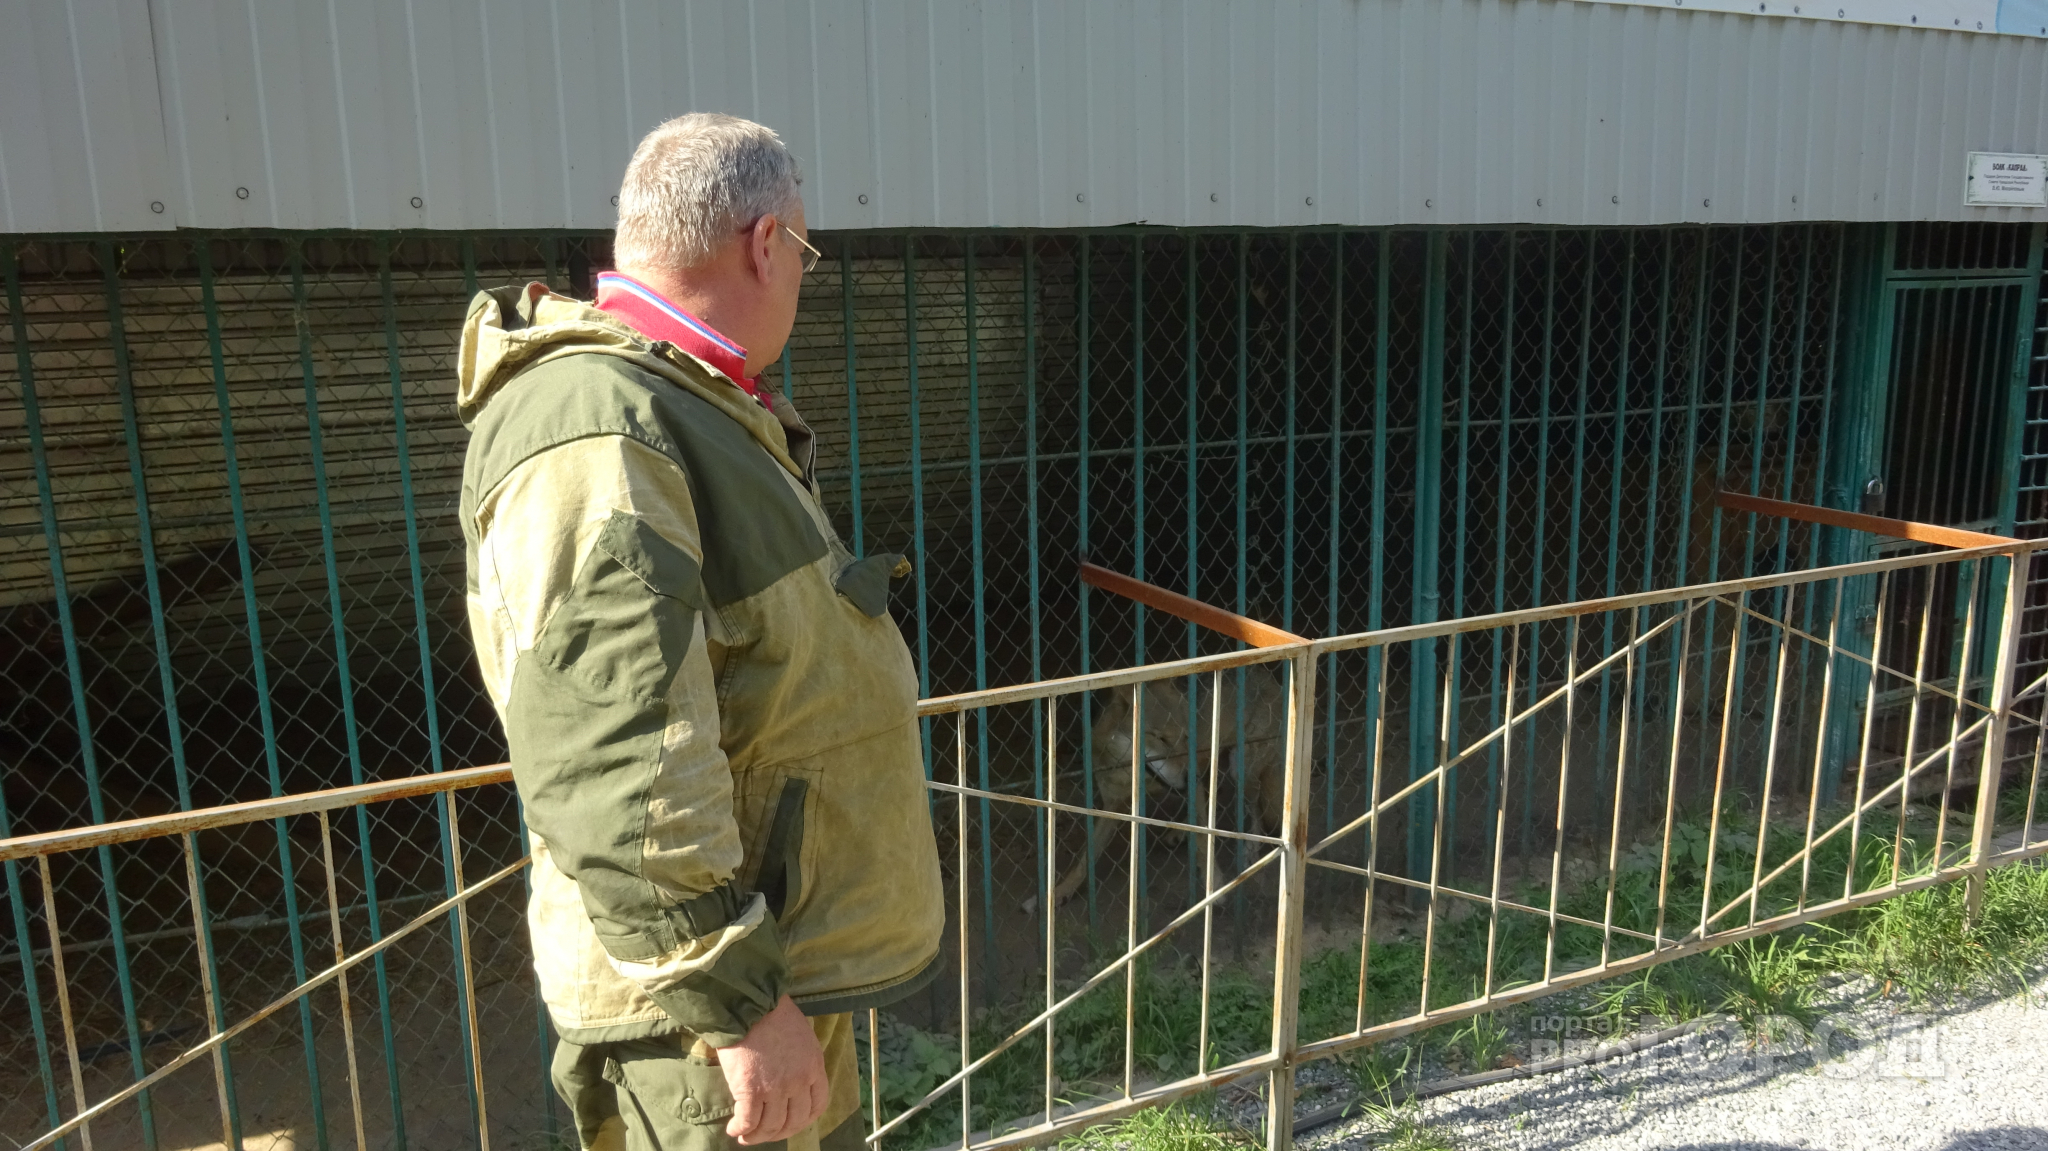 Чтобы накормить волков в "Ельниковской роще", рабочие заходят в клетку с лопатой